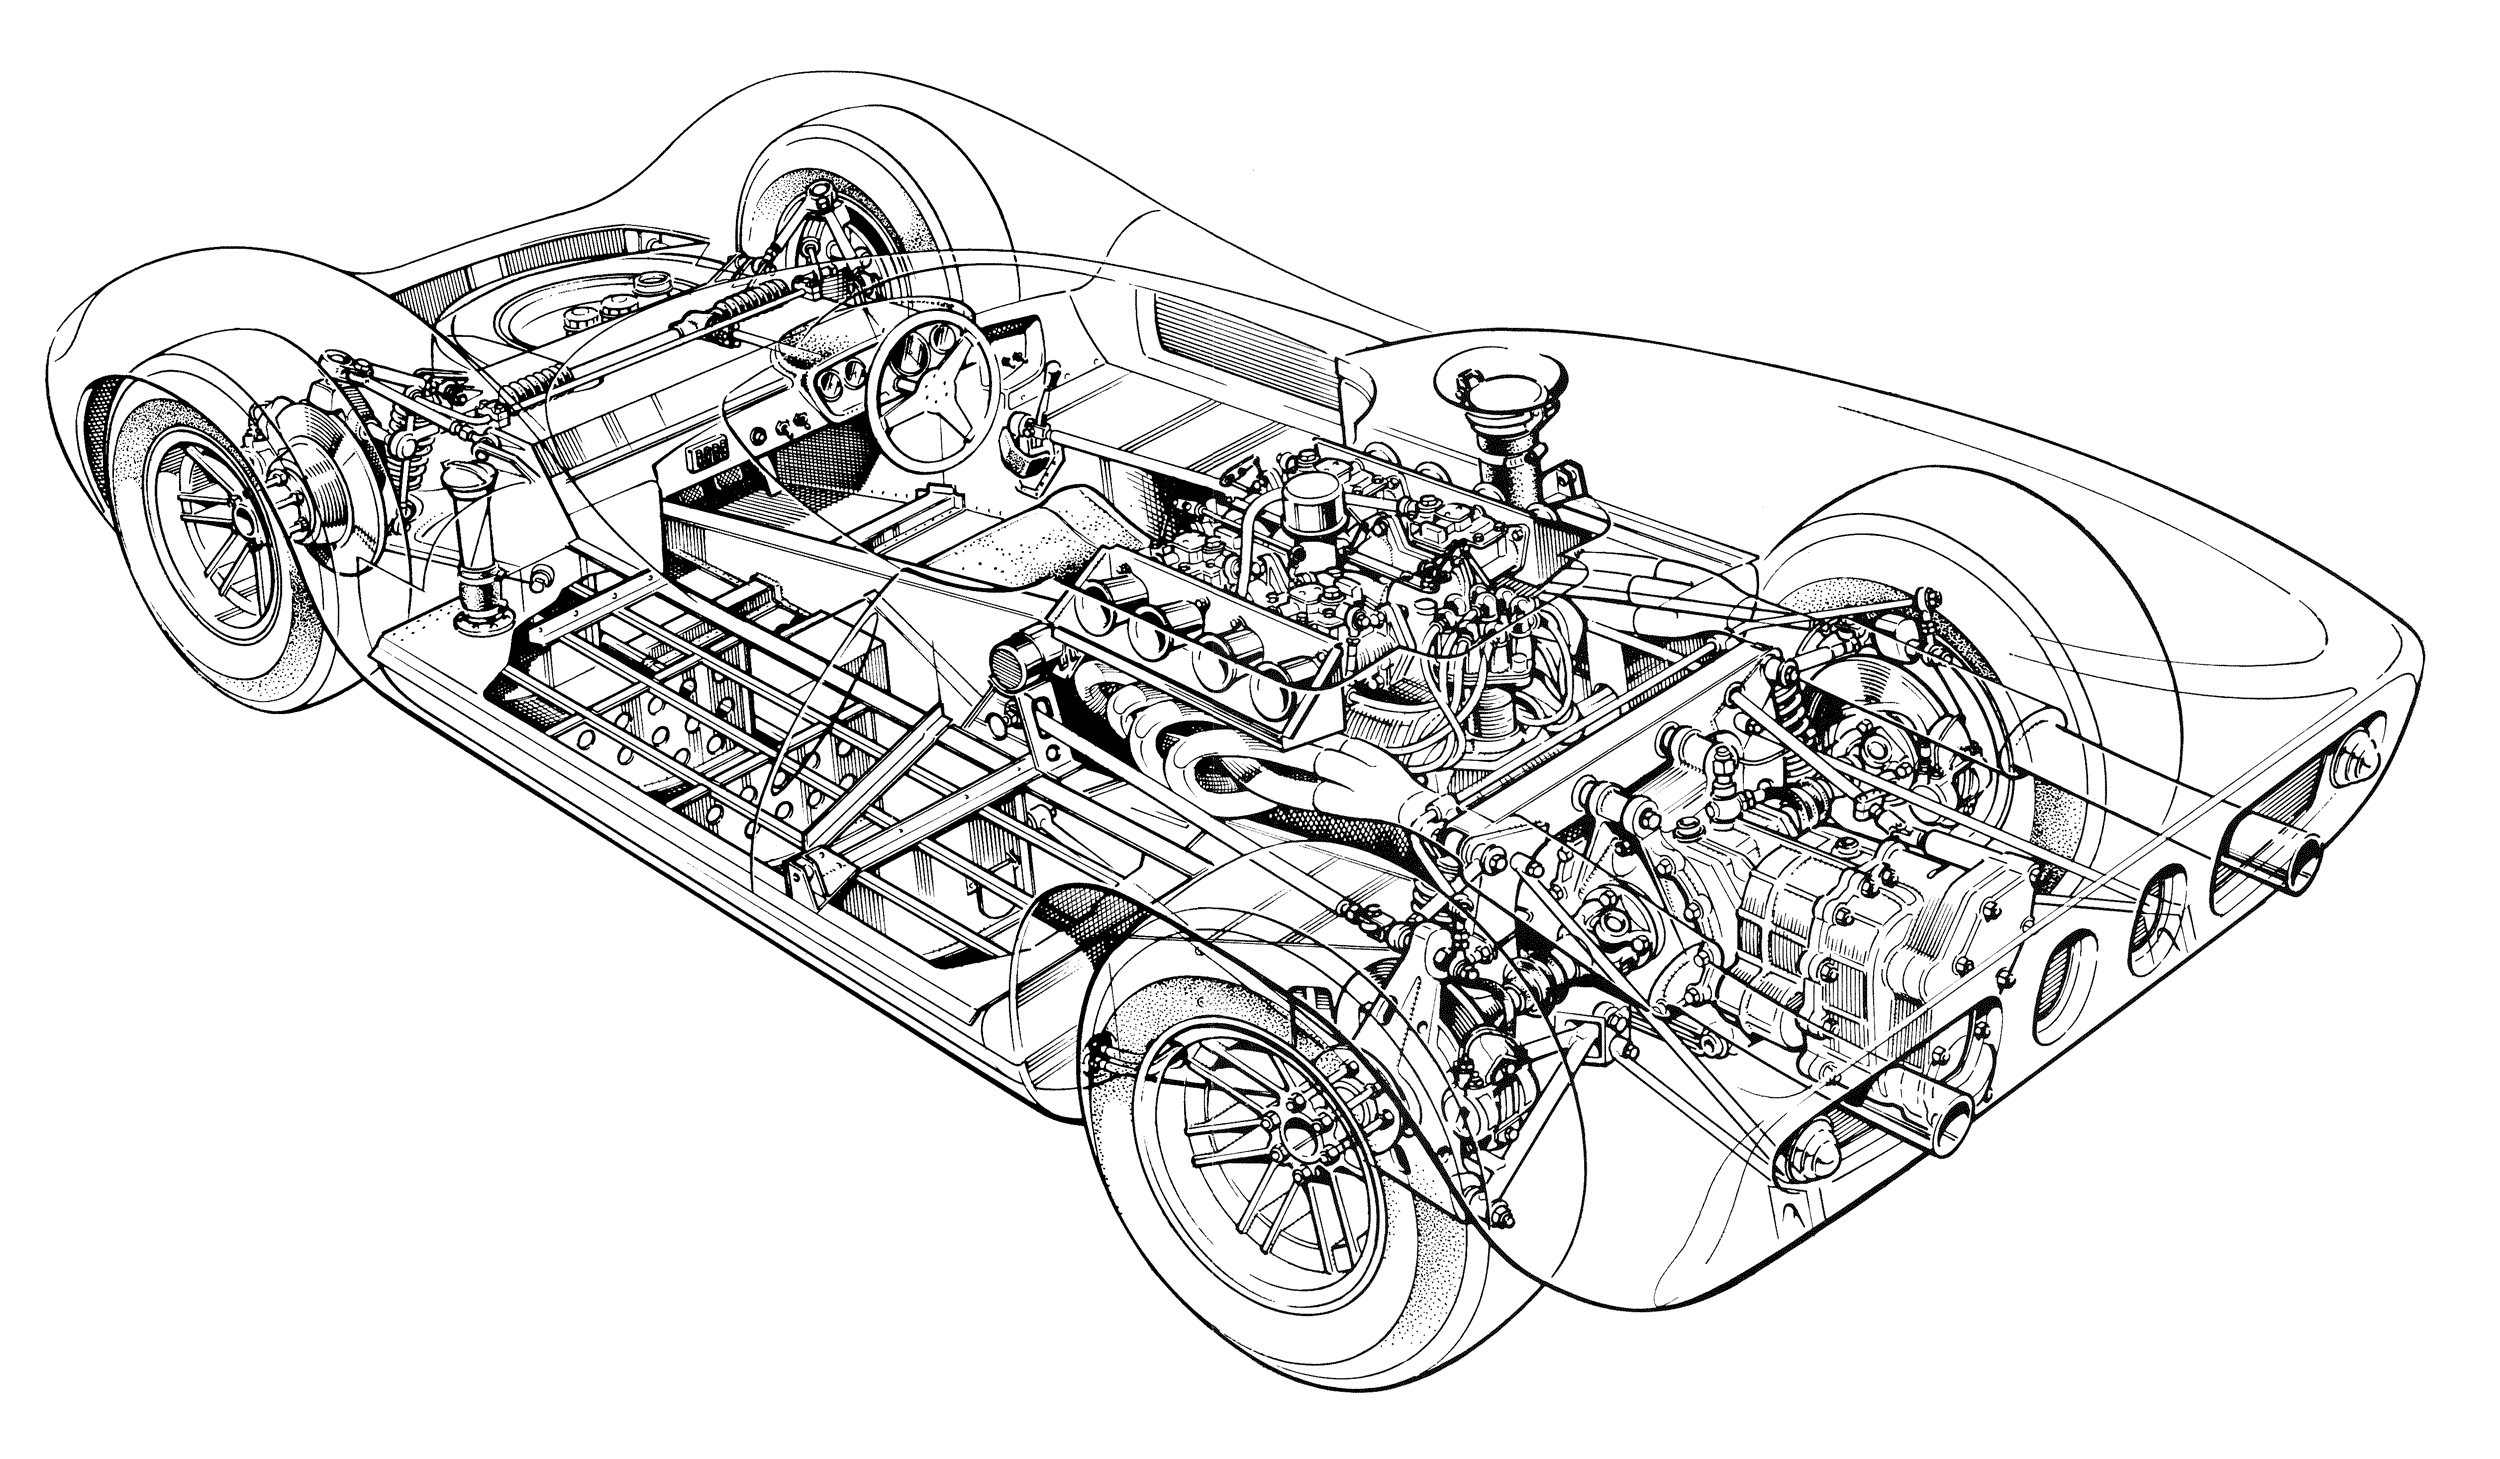 Lola T70 Spyder cutaway drawing